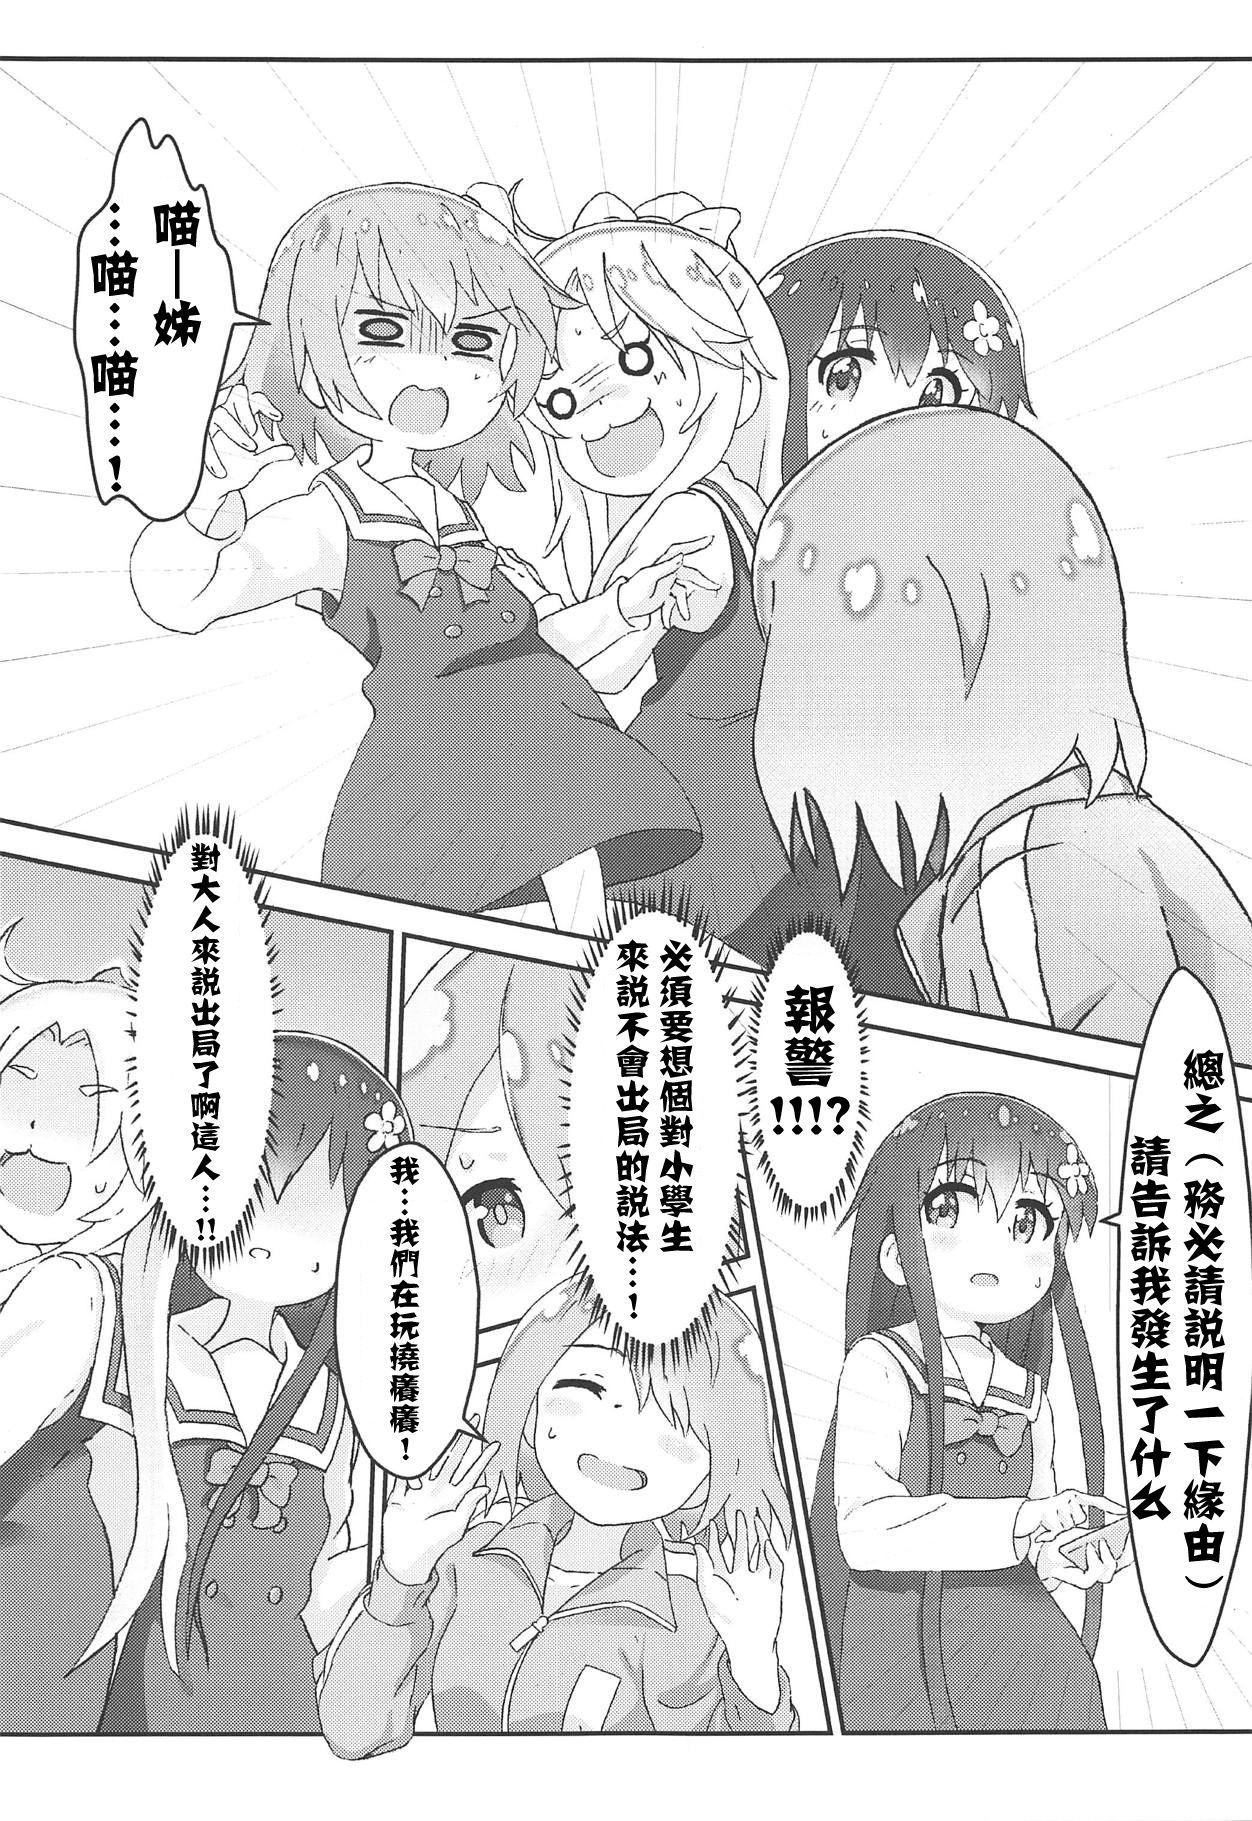 White Chick Watashi ni Yama Susume Shoujo ga Maiorita! - Watashi ni tenshi ga maiorita Yama no susume Pussy Licking - Page 11